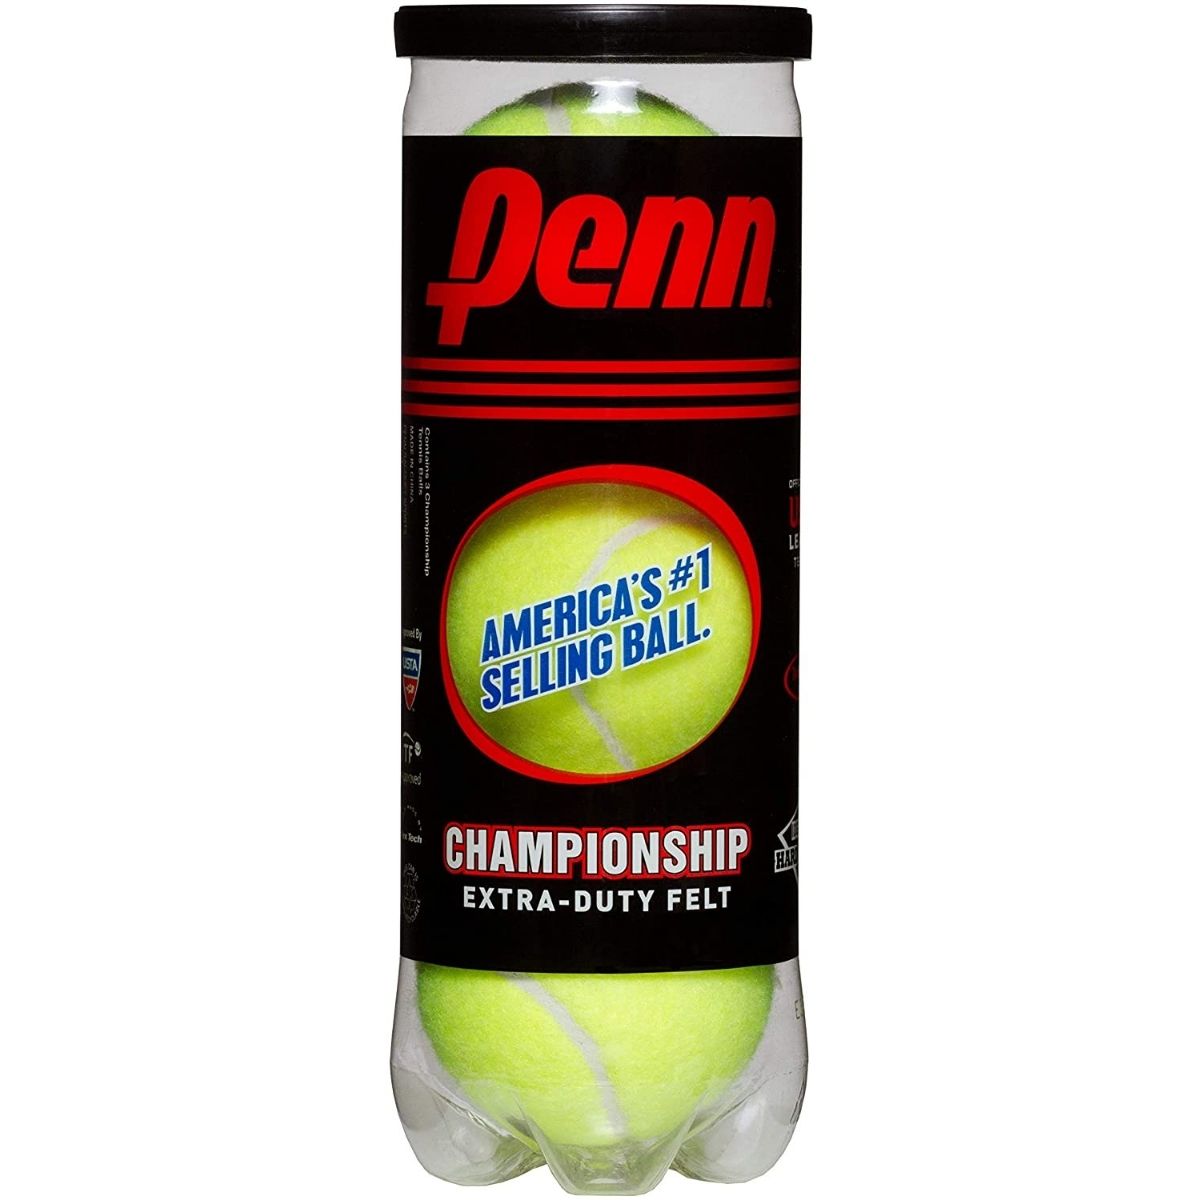 TThe Best Tennis Balls for Ball Machine Options: Penn Championship Tennis Balls